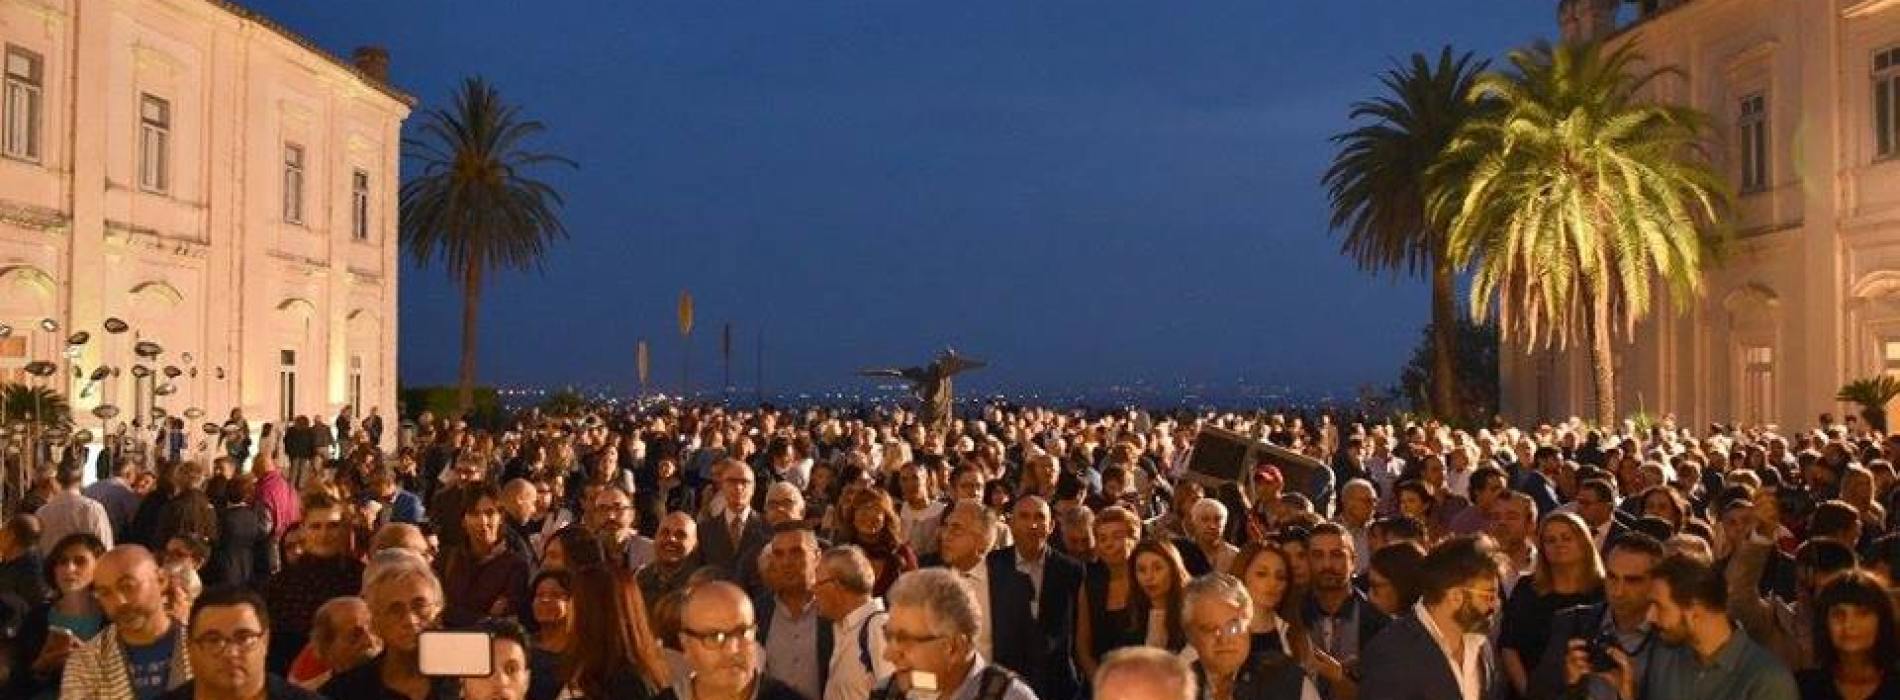 Biennale Belvedere. 5000 presenze per la festa dell’arte